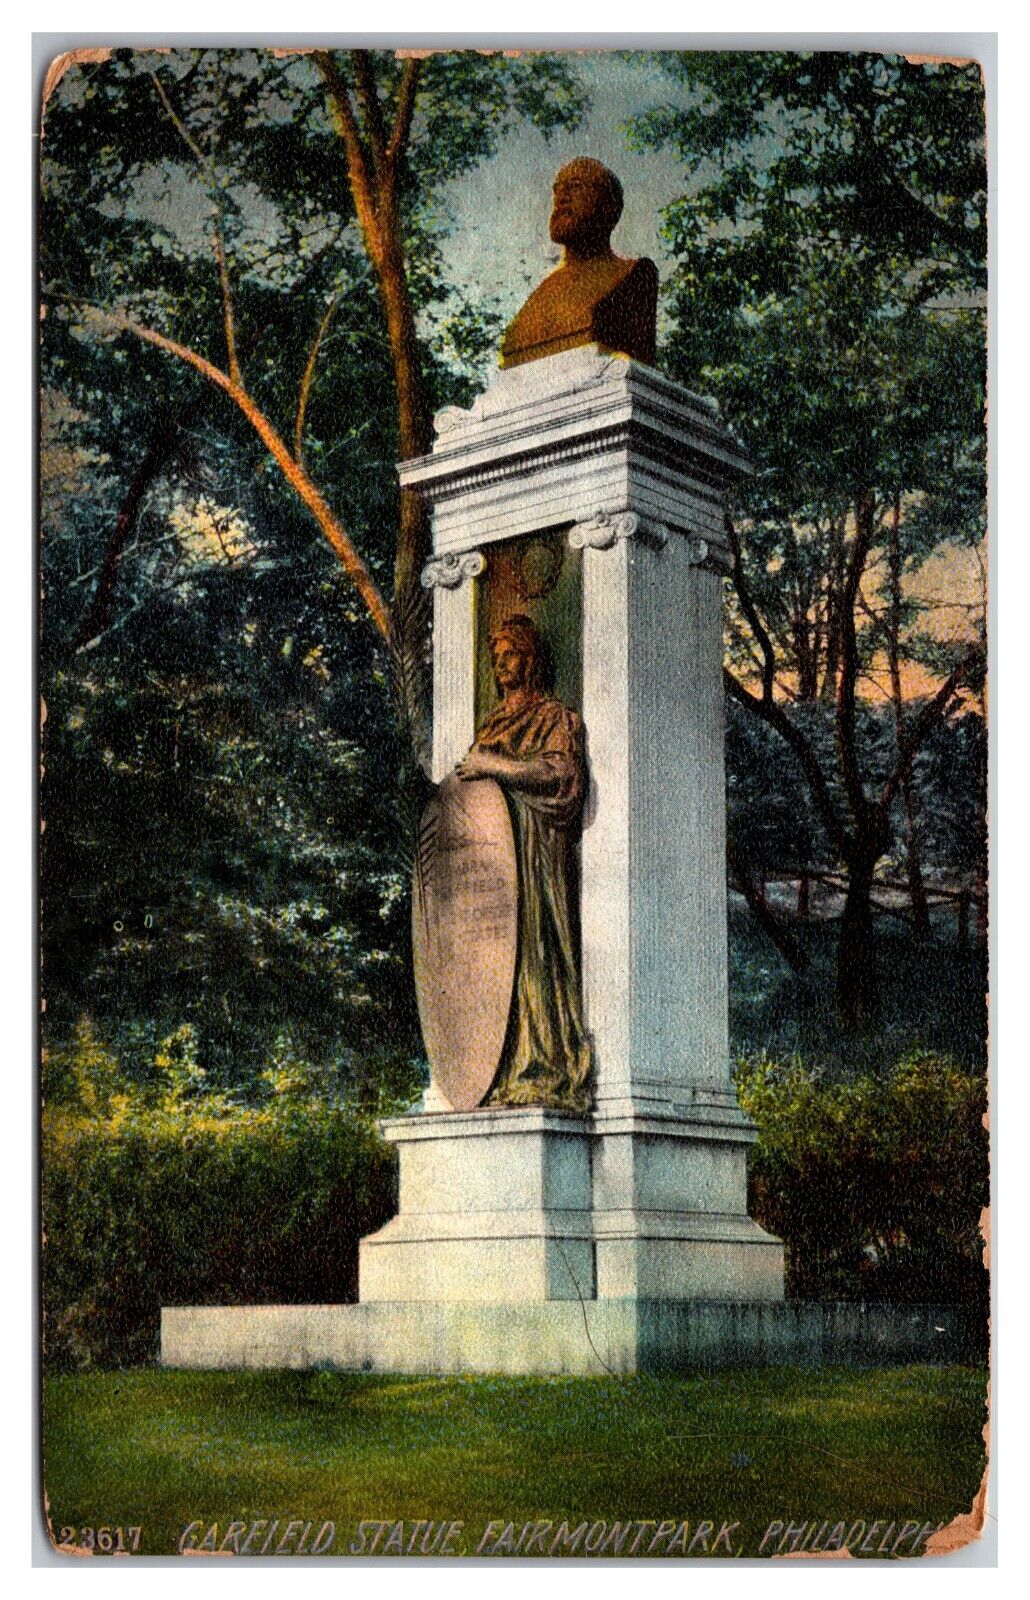 Garfield Statue, Fairmount Park, Philadelphia, Pennsylvania